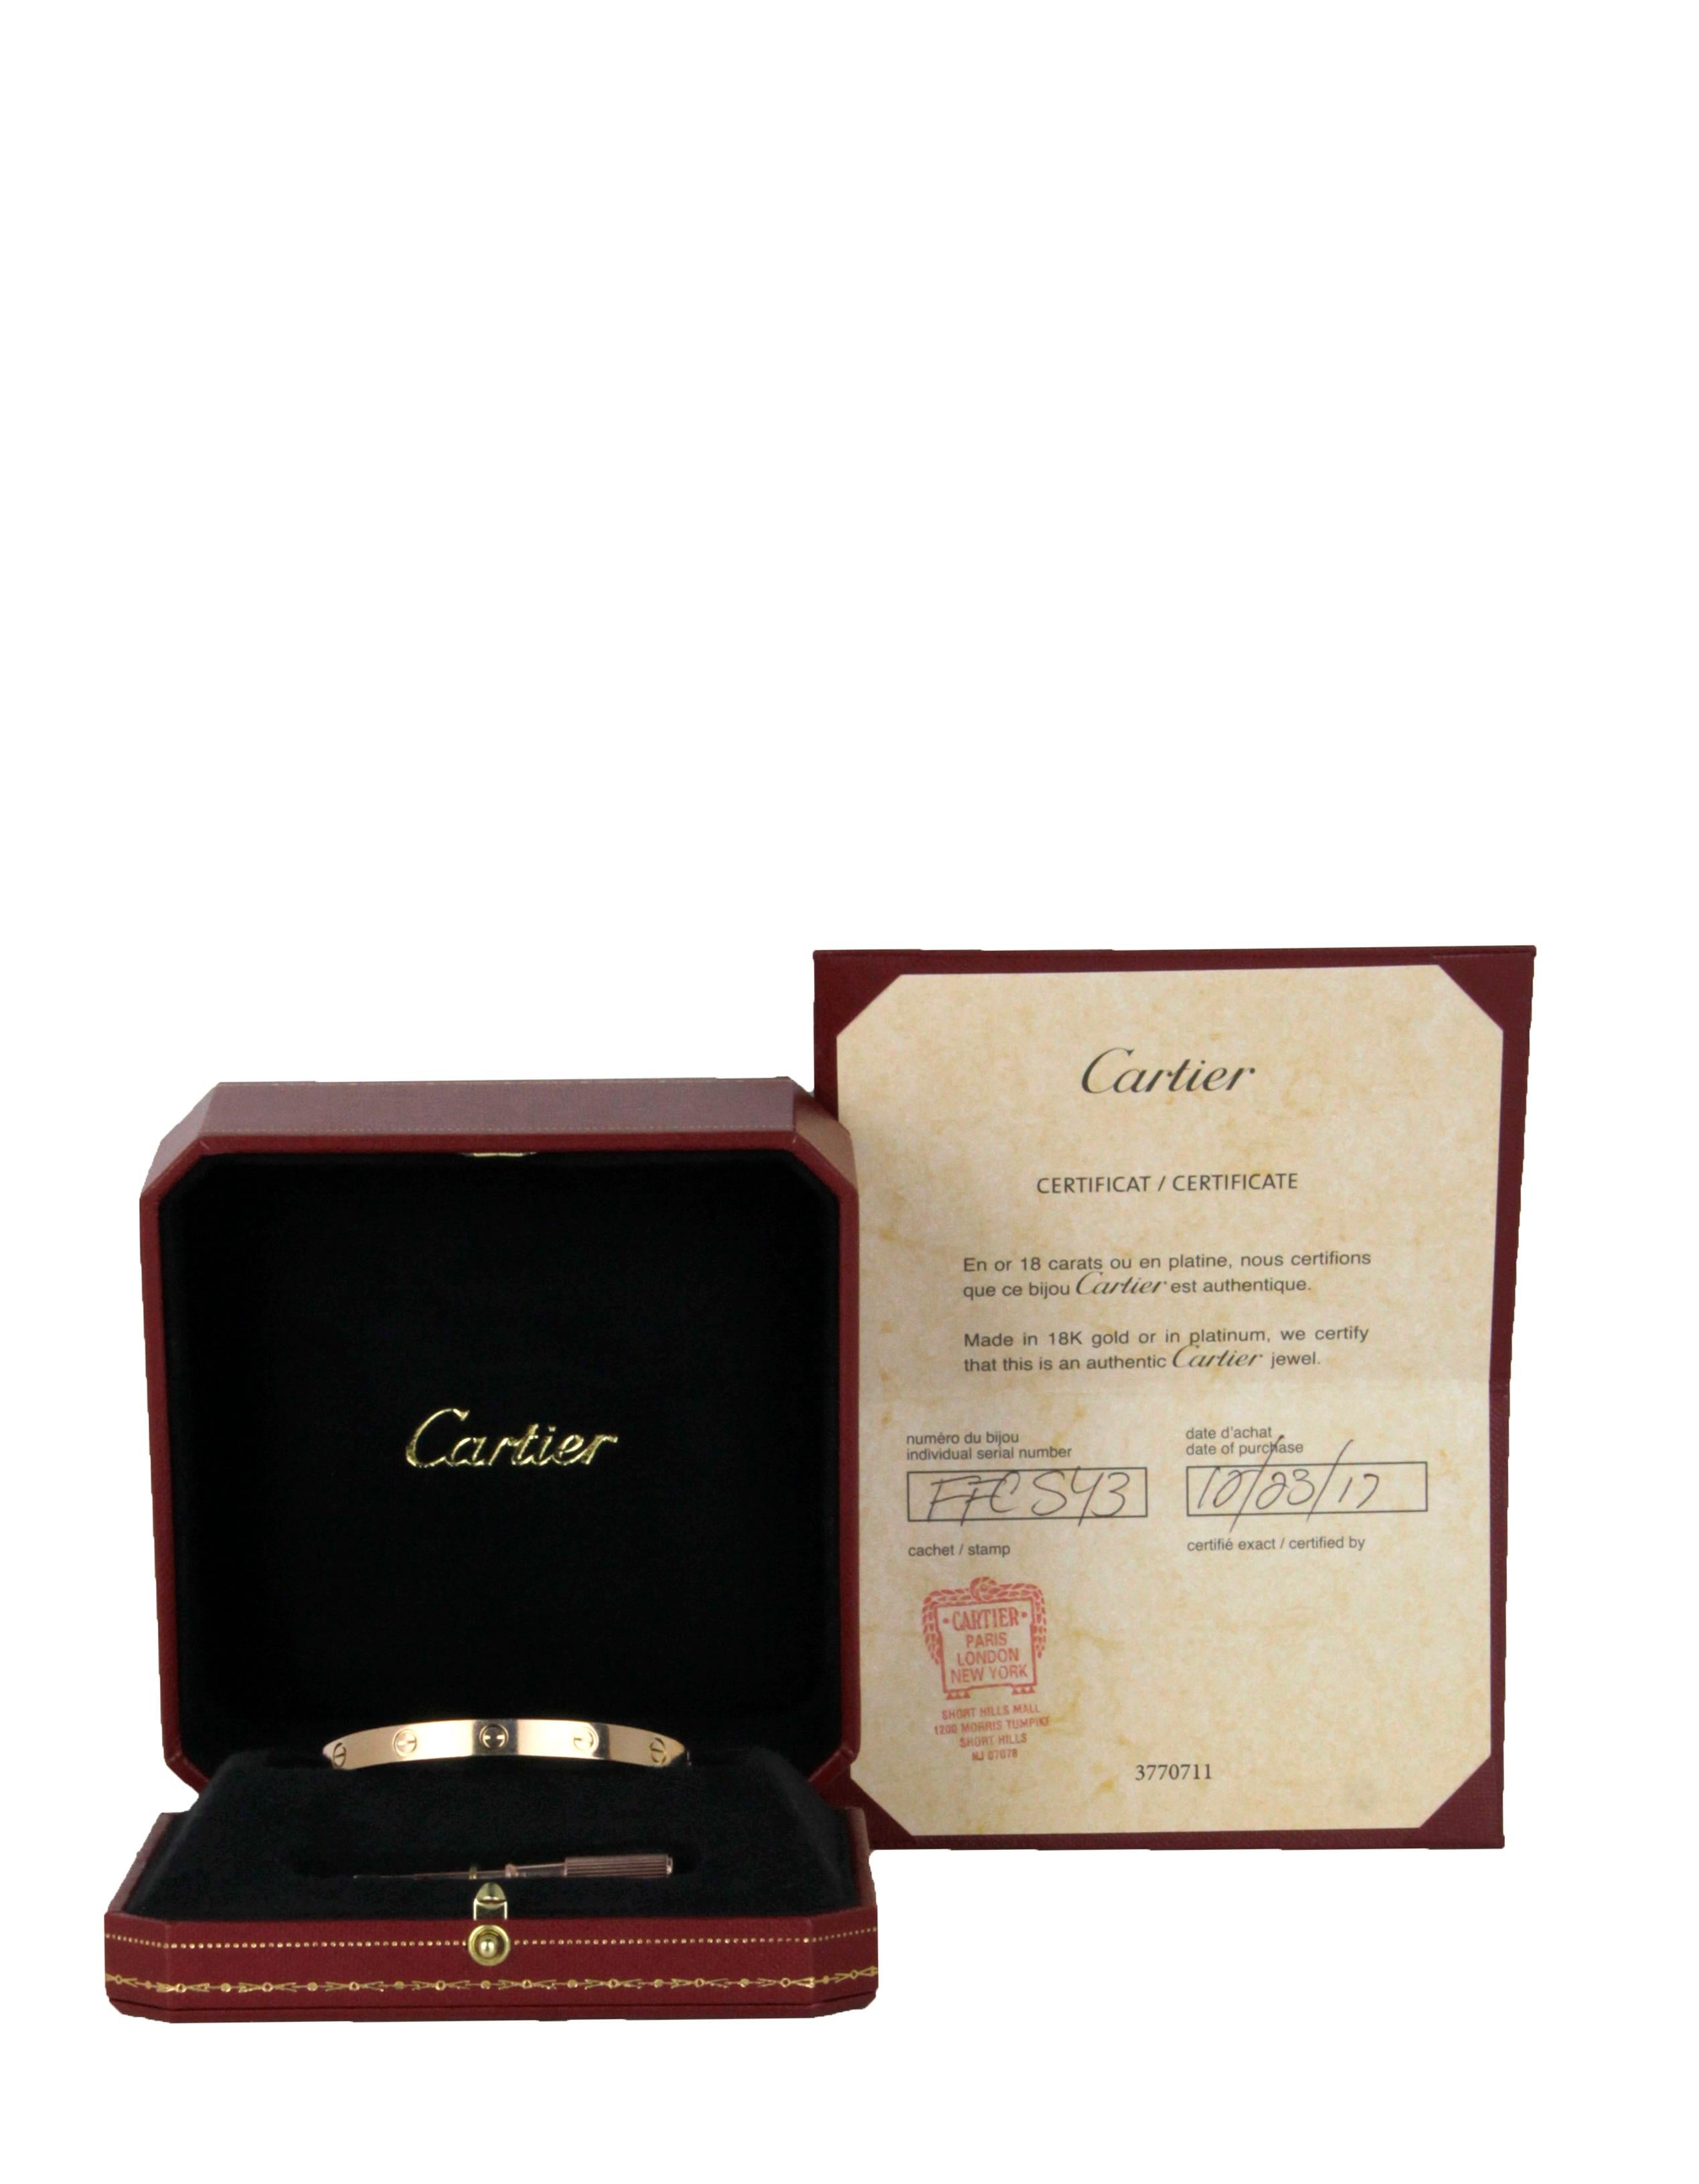 Cartier - Bracelet LOVE en or rose 18 carats 

Année de production : 2017
Couleur : or rose
Matériaux : Or rose 18k
Poinçons : 